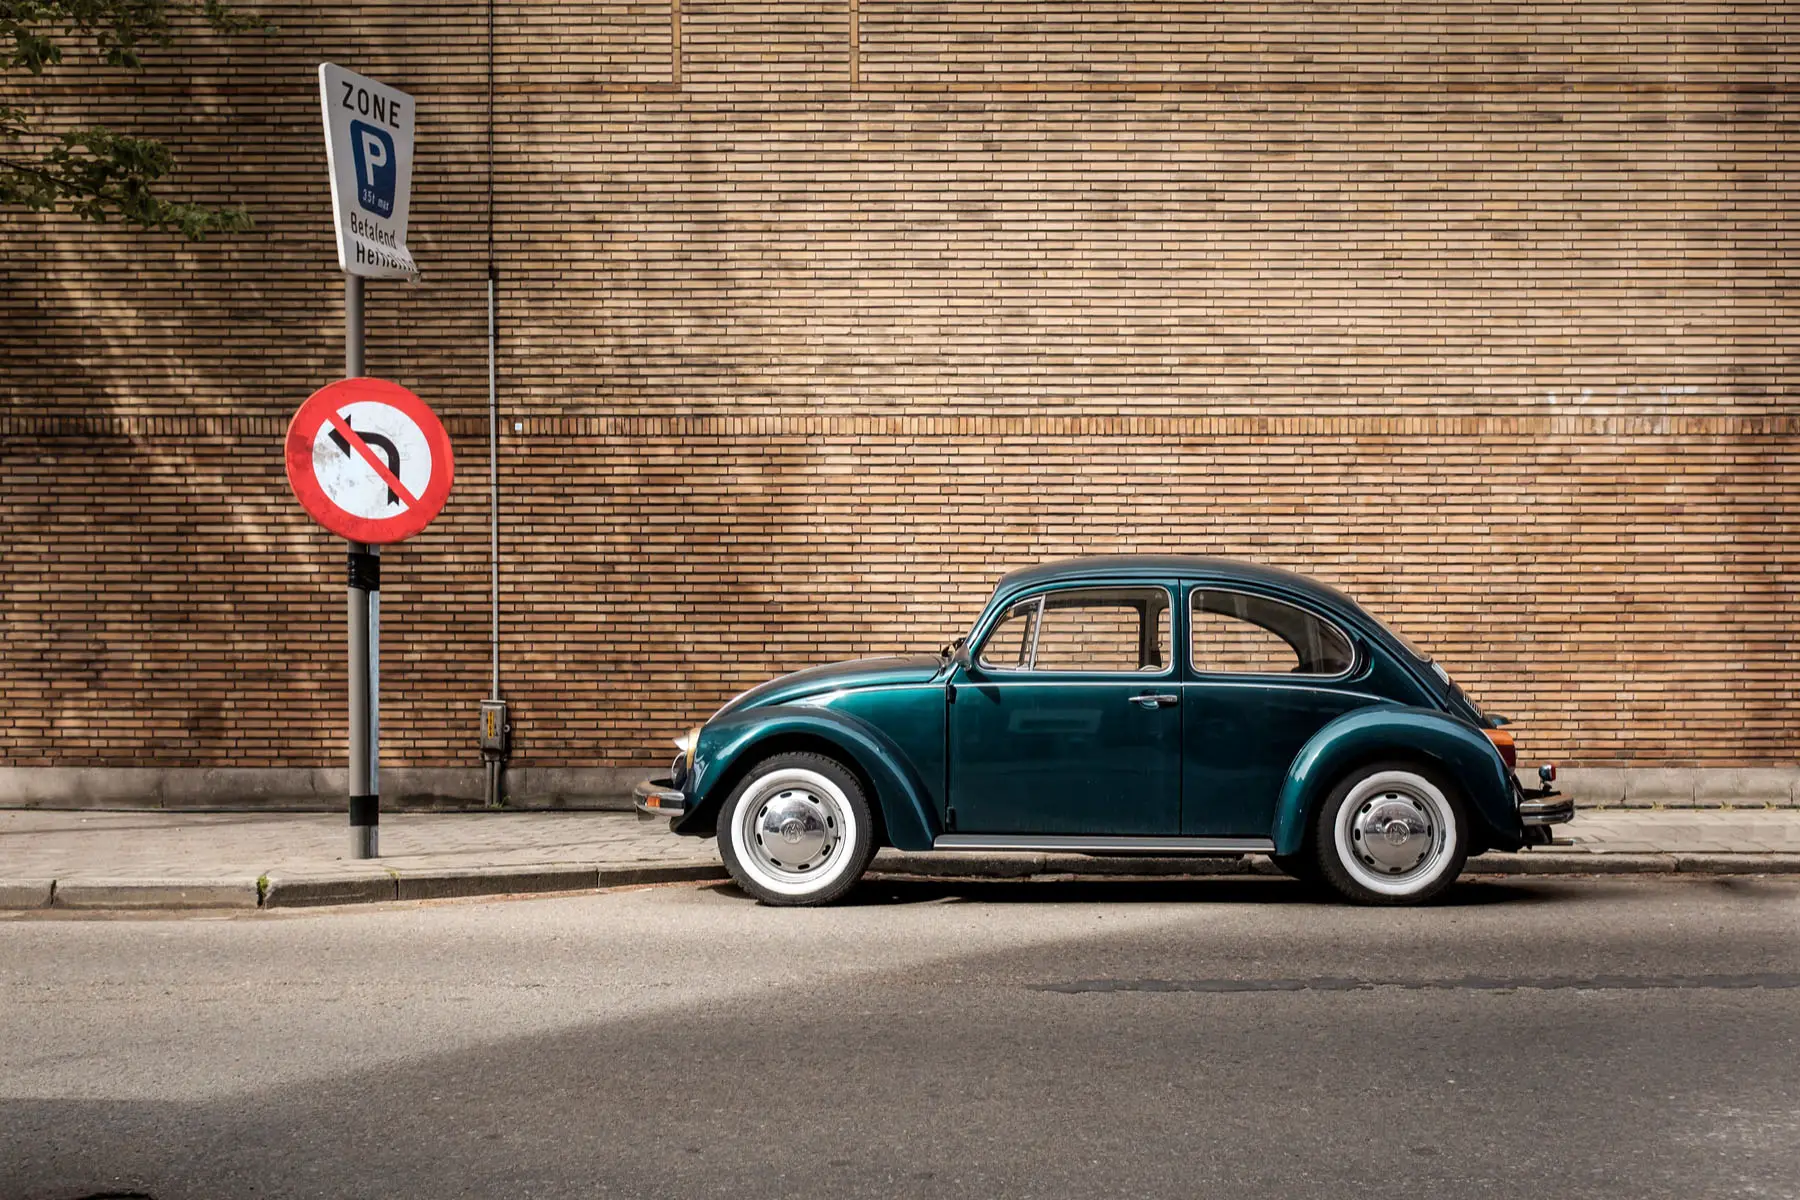 a vintage VW Beetle parked near road signs in Antwerp, Belgium